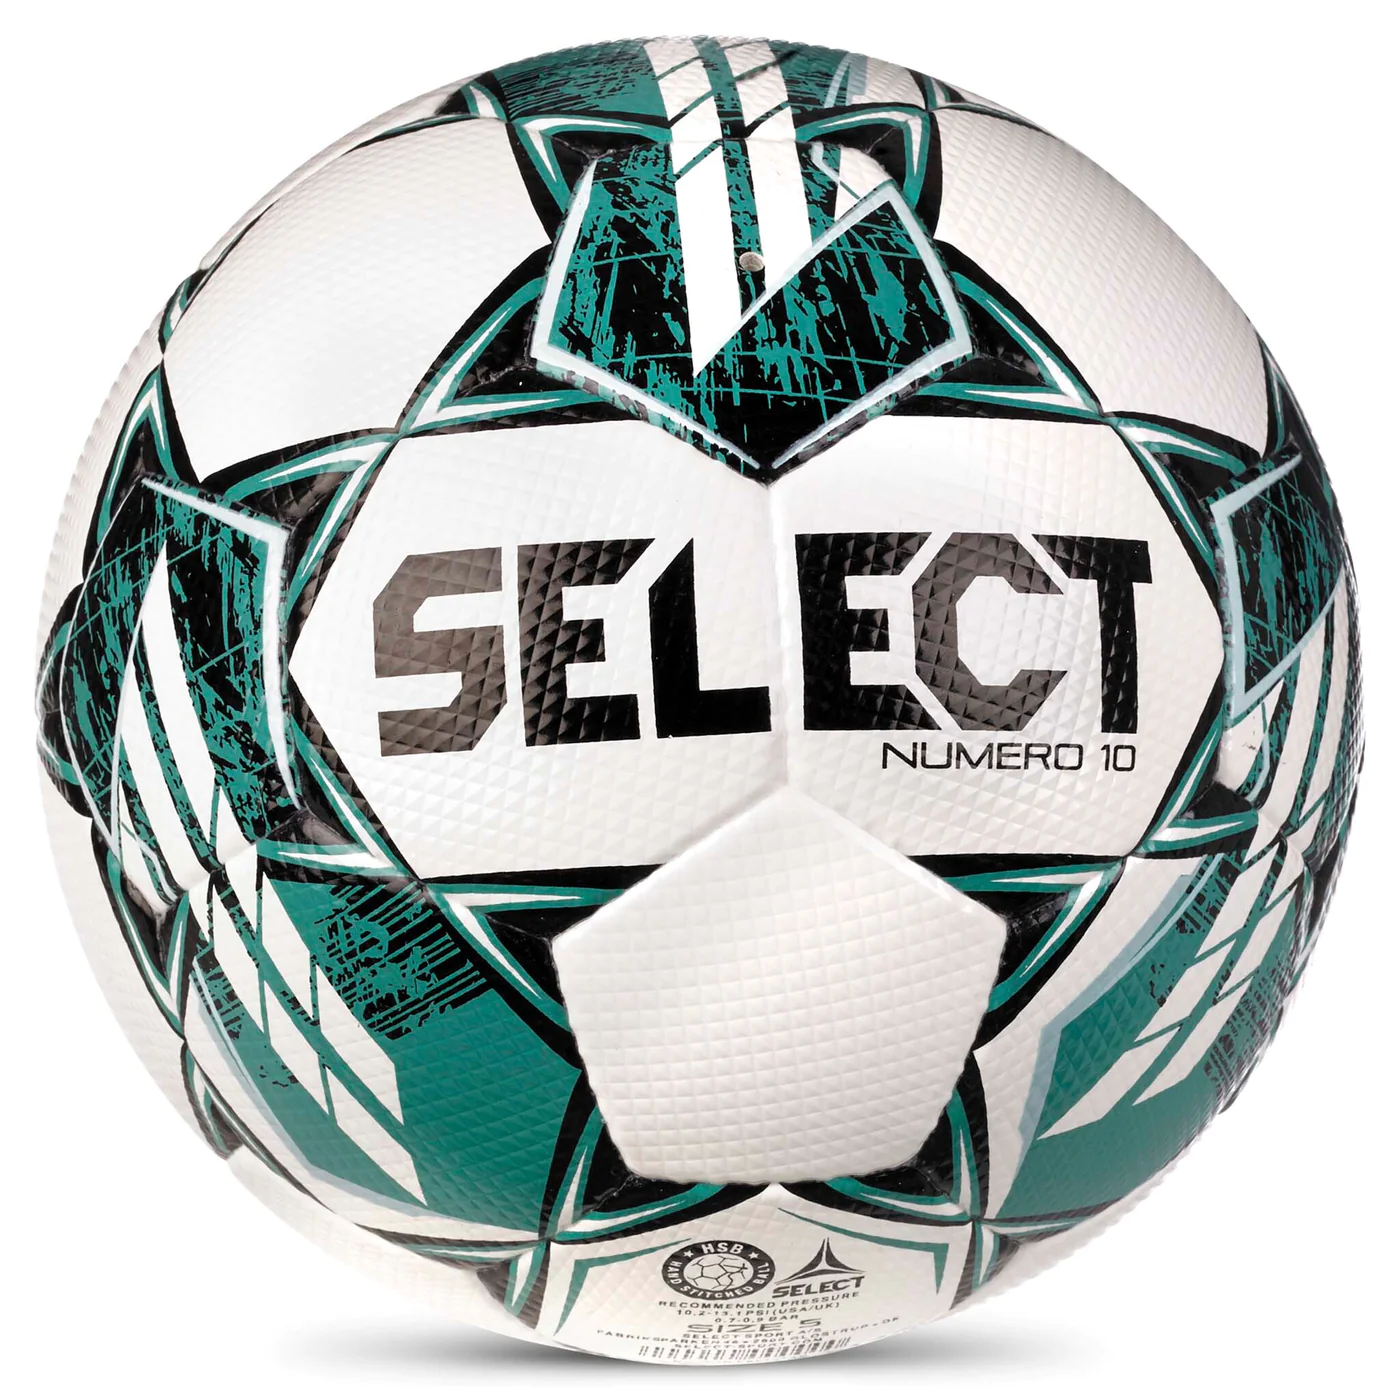 Minge fotbal Select Numero 10 2023, FiFA  quality PRO